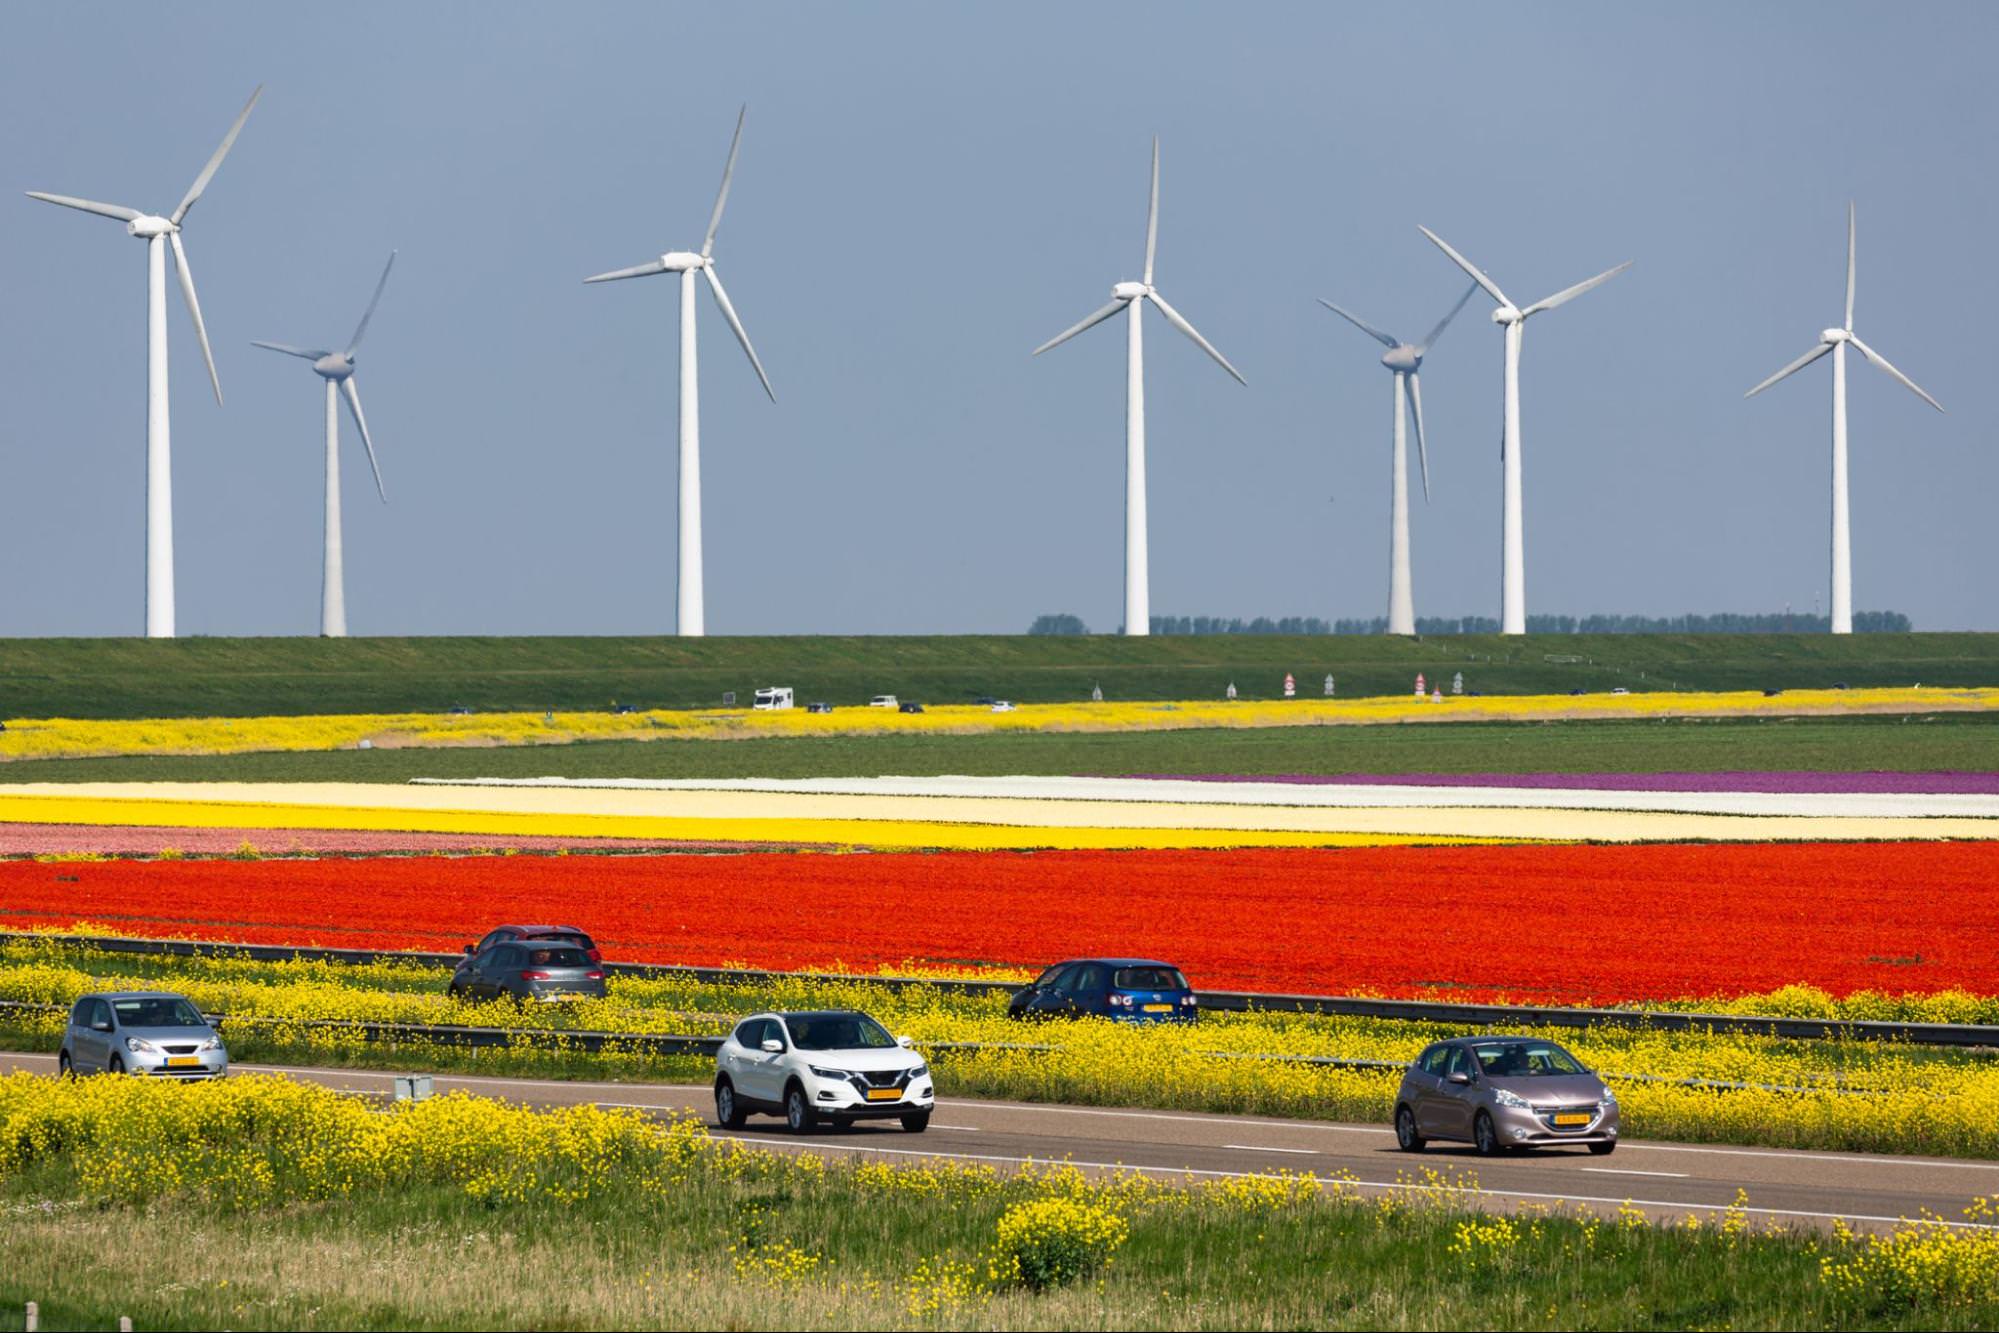 Barevná holandská krajina s poli červených, žlutých a bílých květů v popředí. Několik aut jezdí po silnici přes pole.